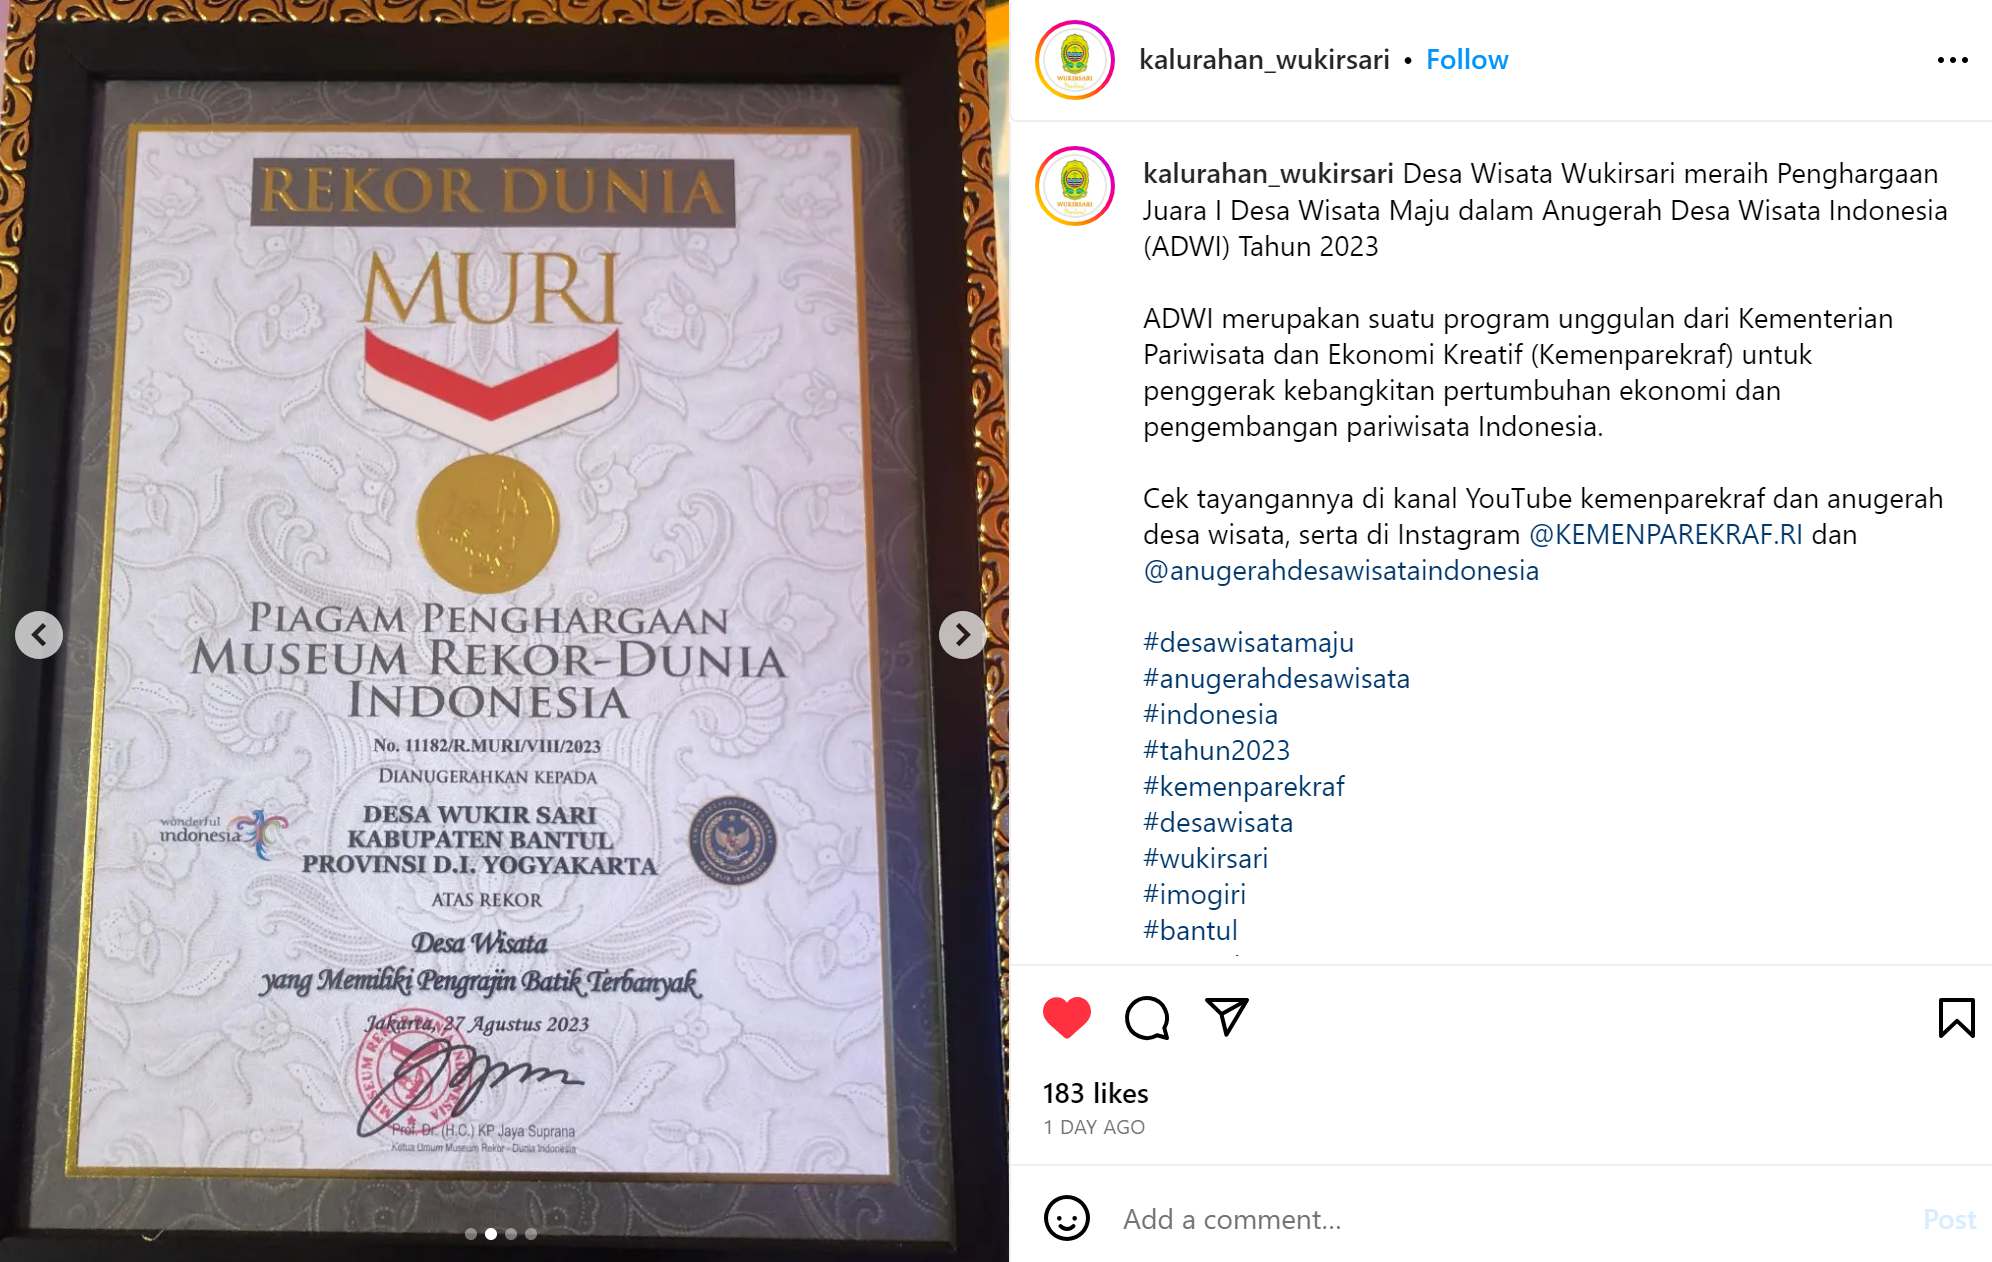 Desa Wukirsari Meraih Penghargaan Juara 1 Desa Wisata Maju dalam Anugerah Desa Wisata Indonesia (ADWI) Tahun 2023